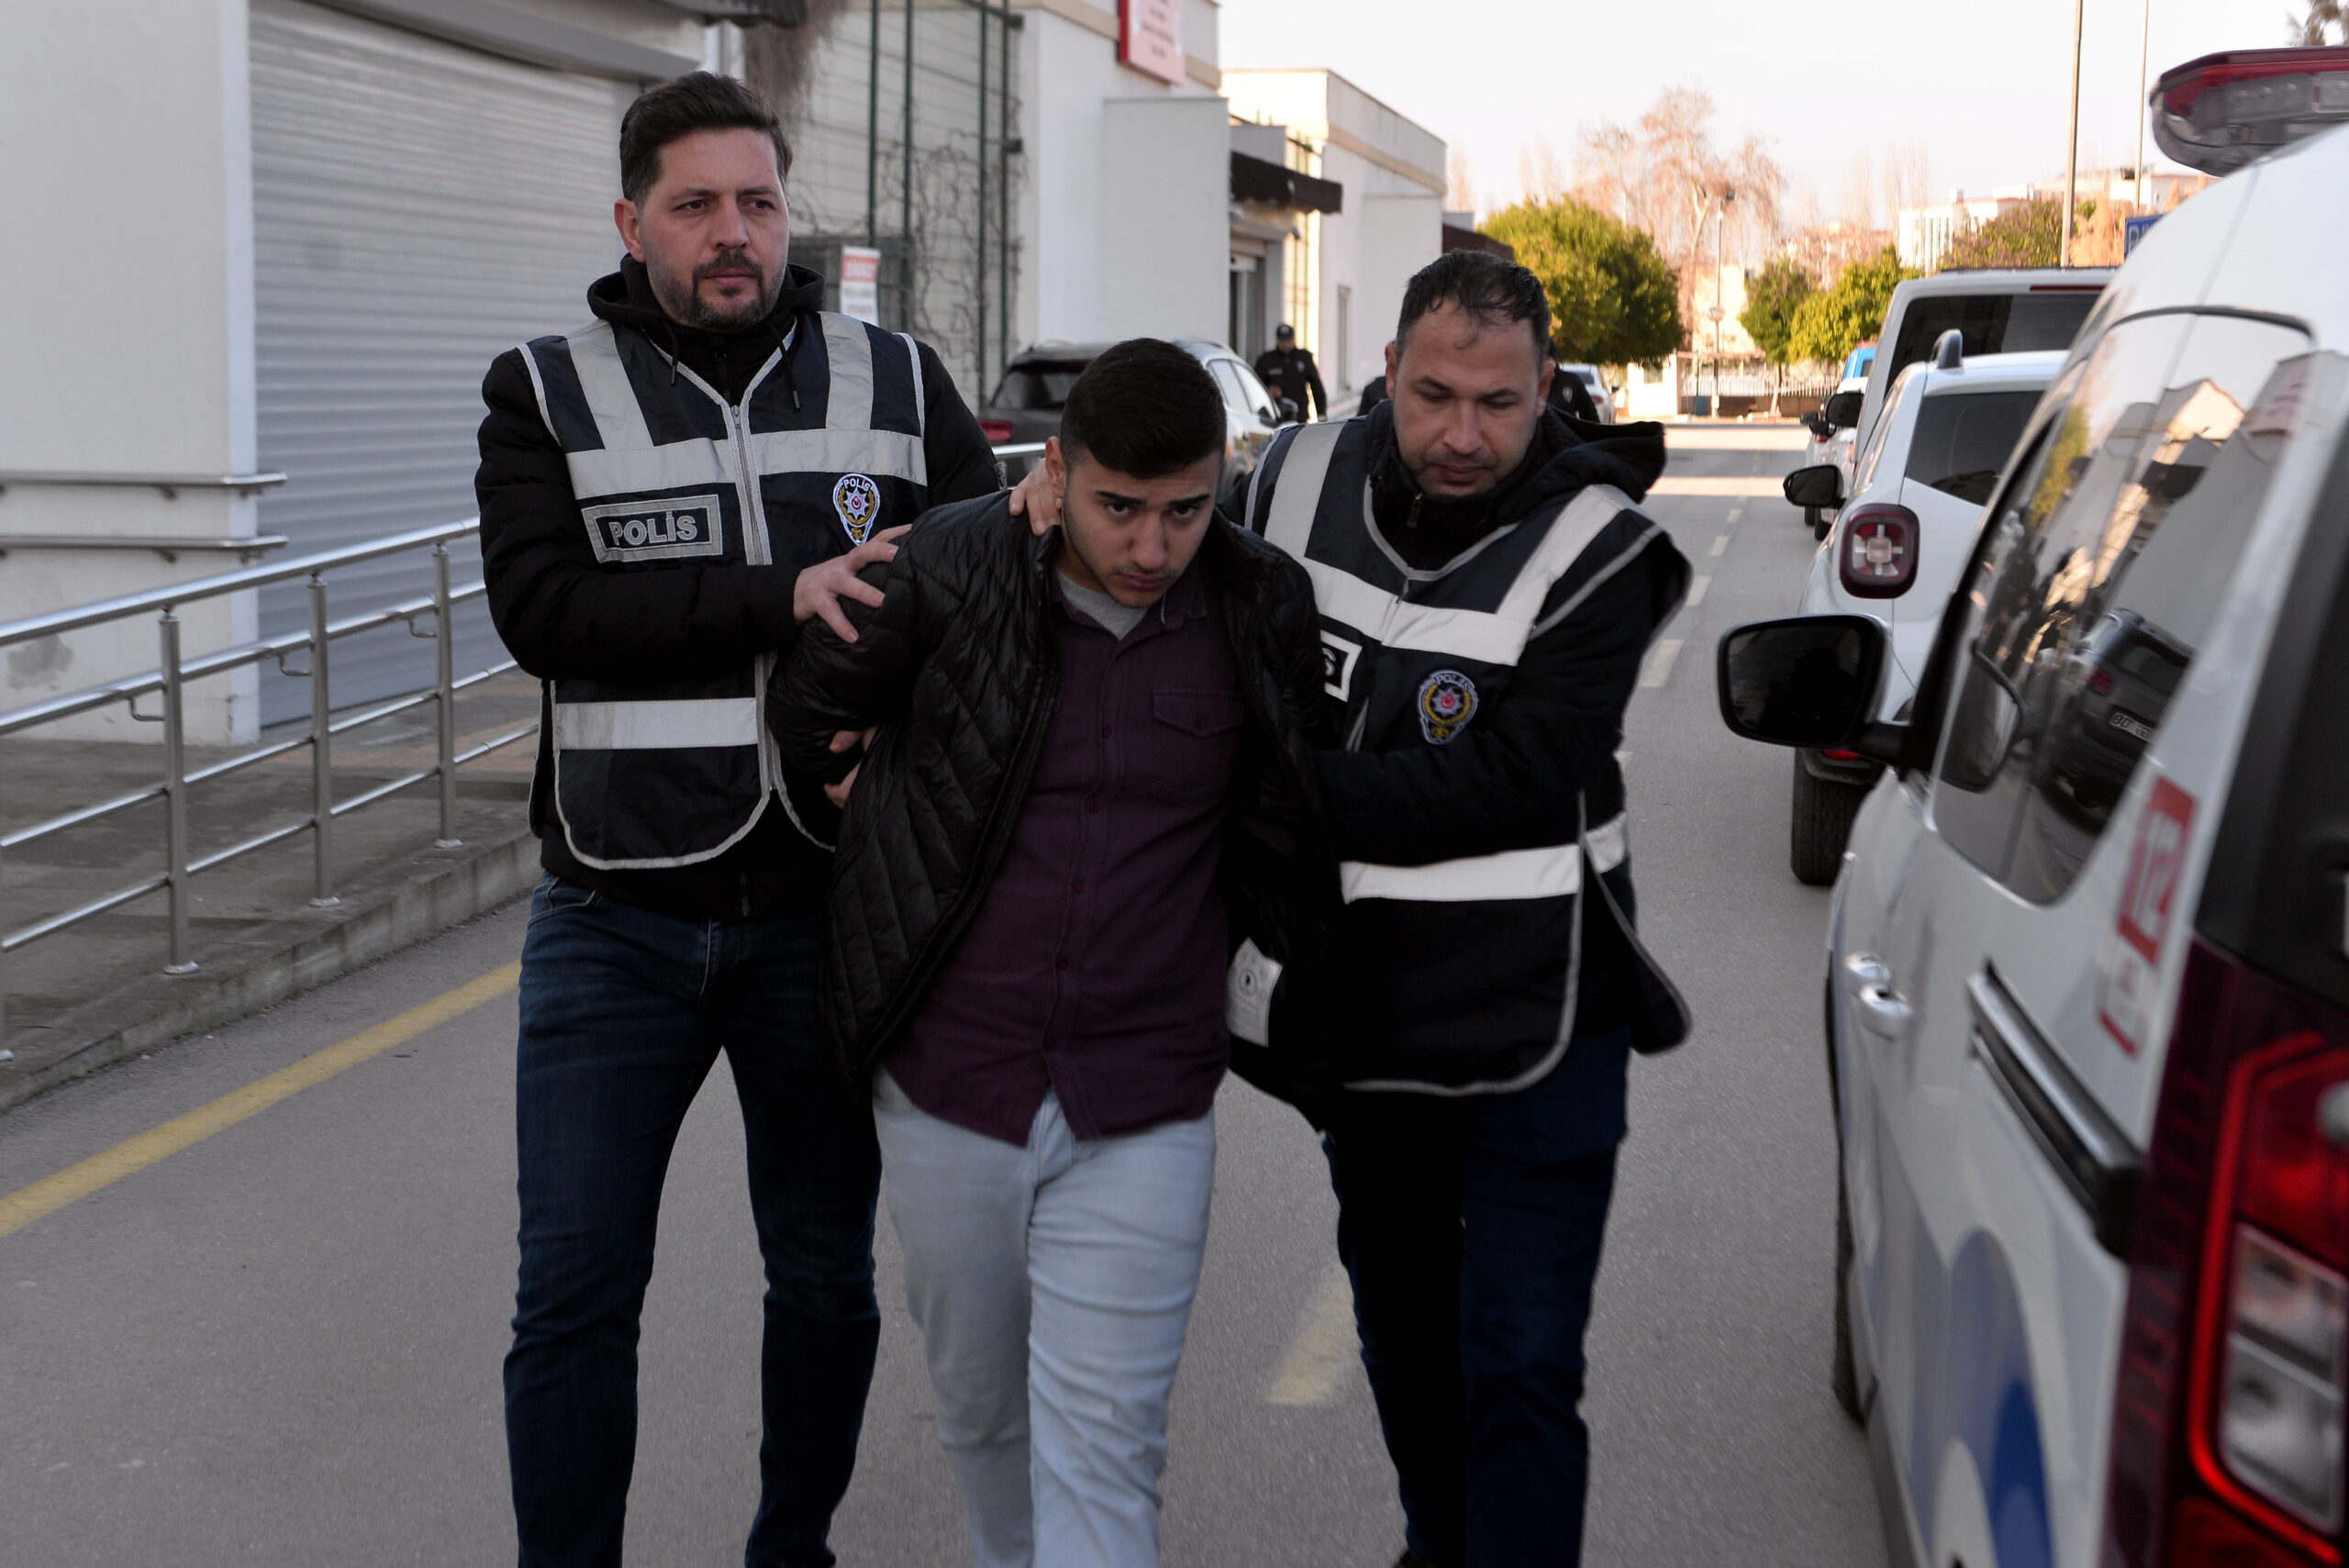 Adana’da gerçekleştirilen operasyonlarda, silah ve uyuşturucu bulunduran 2 eve baskın düzenlendi. Operasyonlar sonucunda 2 kişi gözaltına alındı.